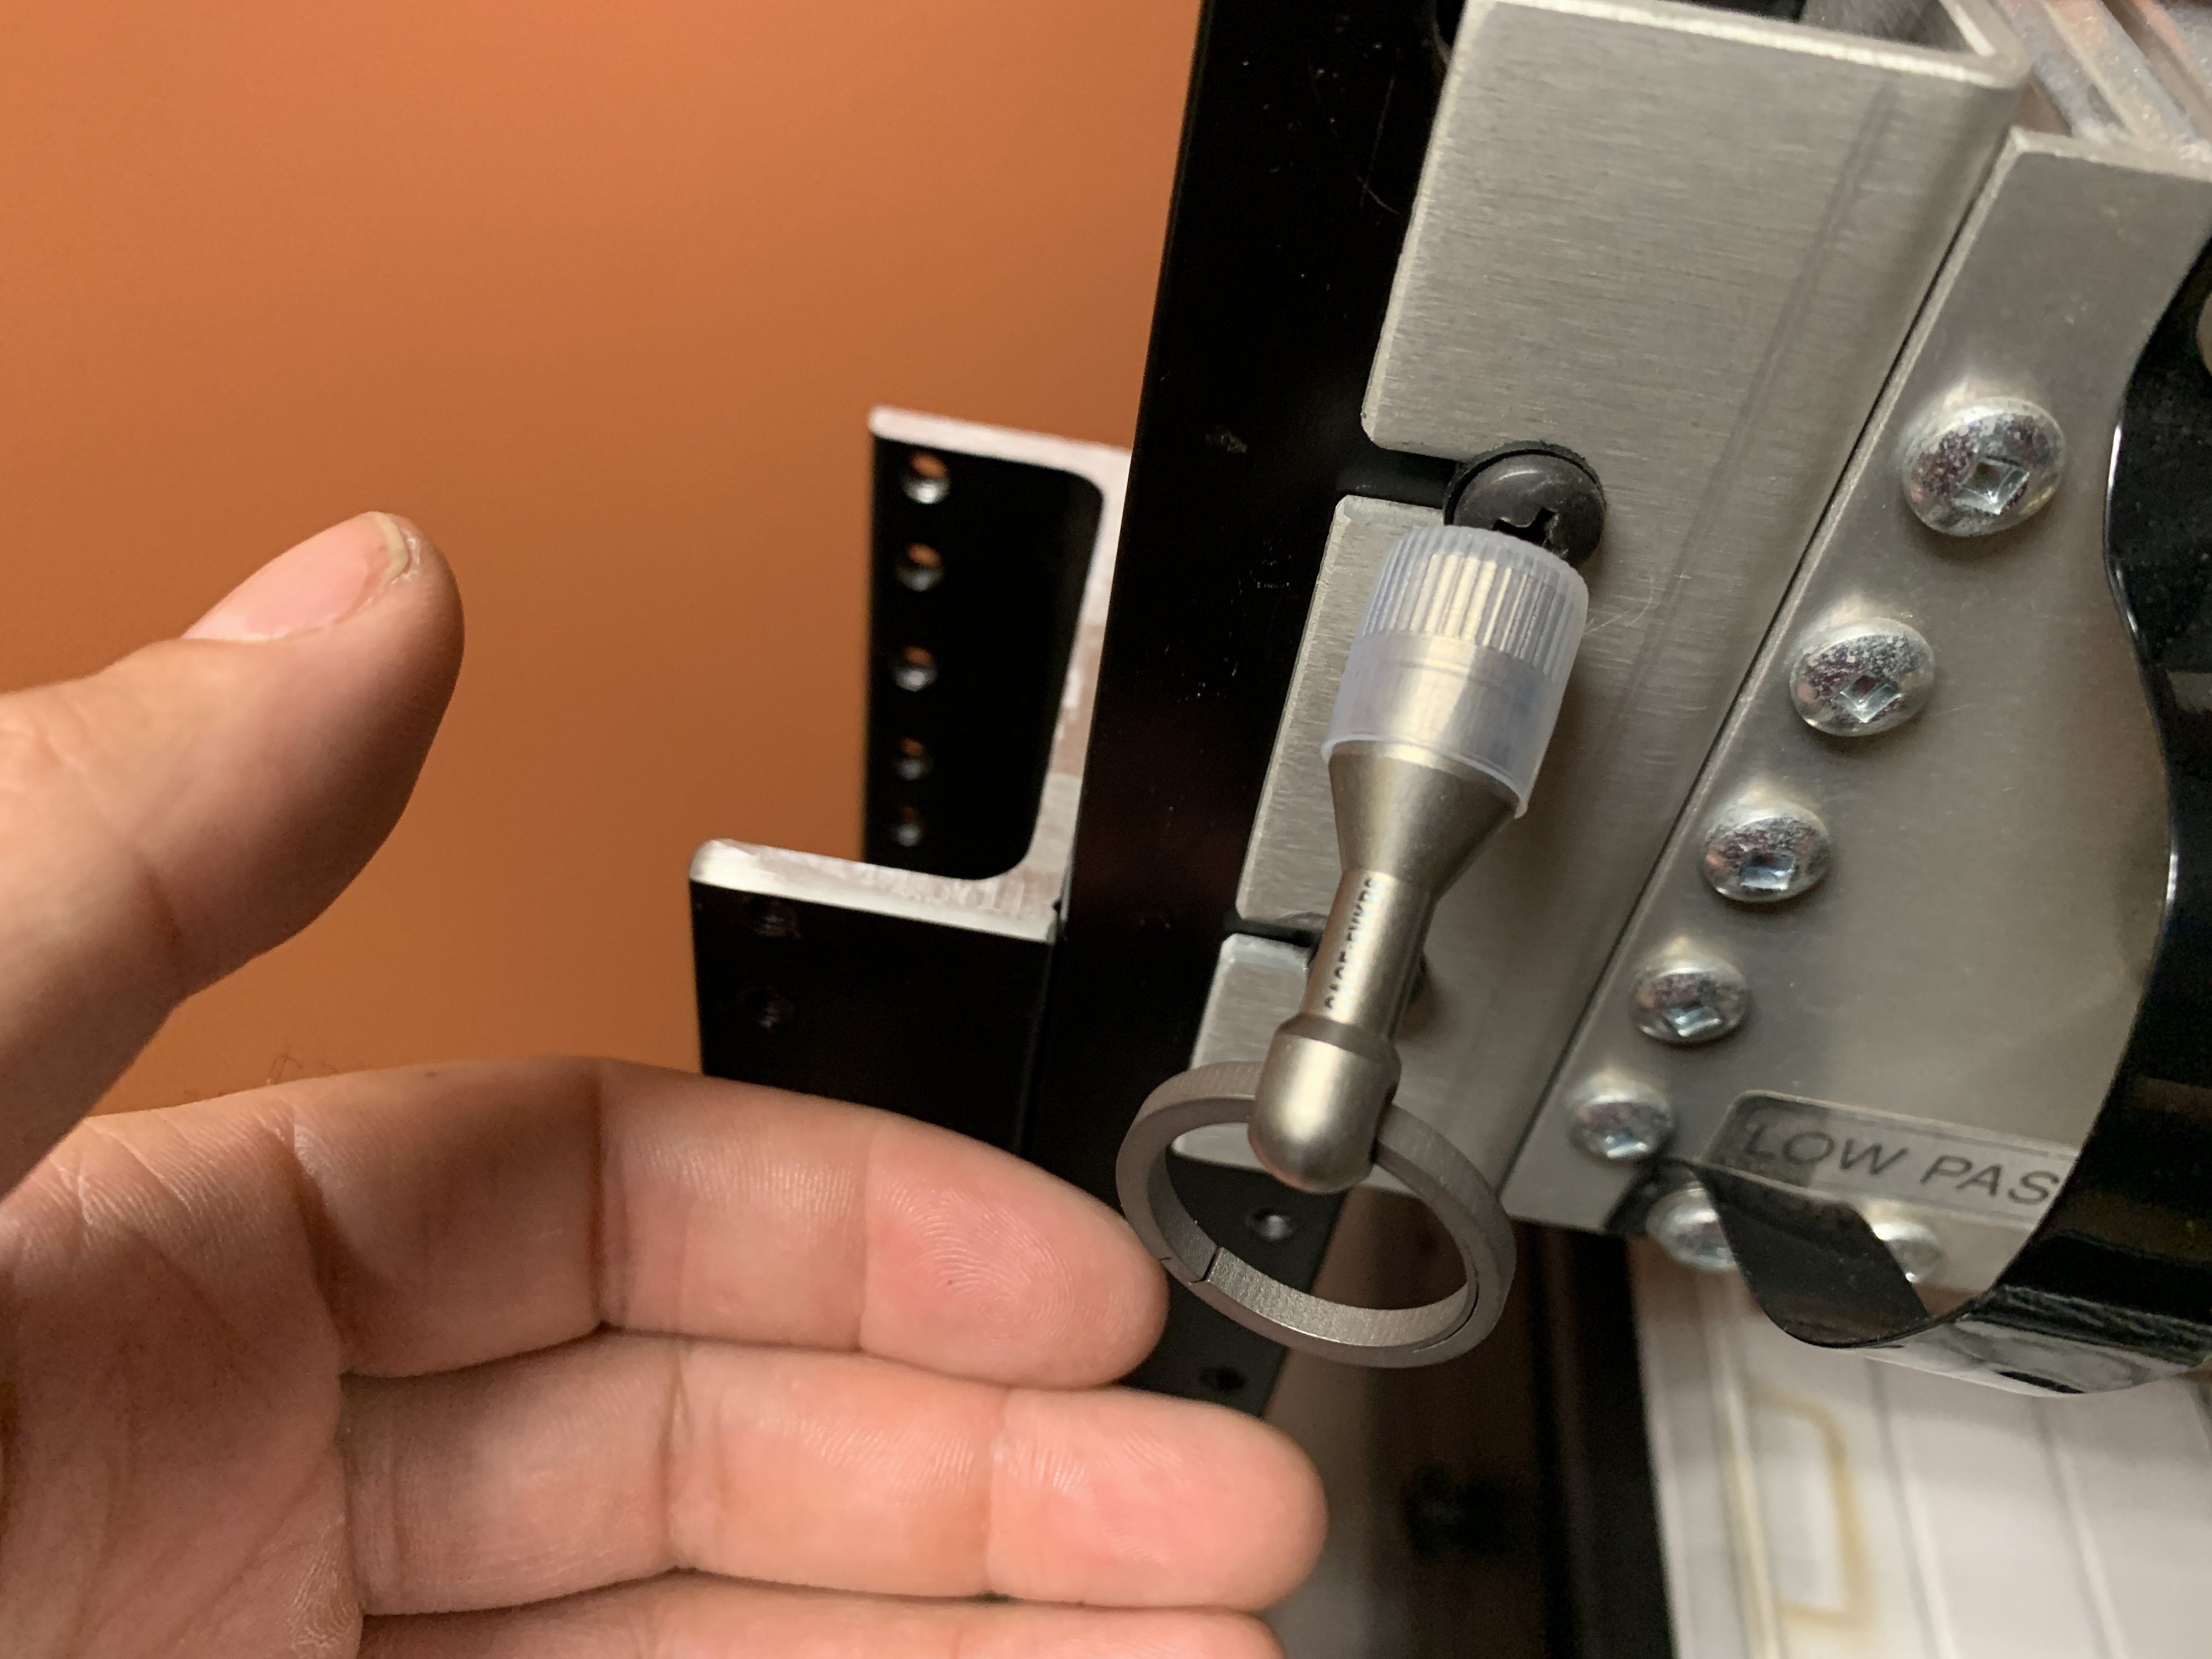 Titanium Magnetic Ferrous Tester + Living Spring Key Ring